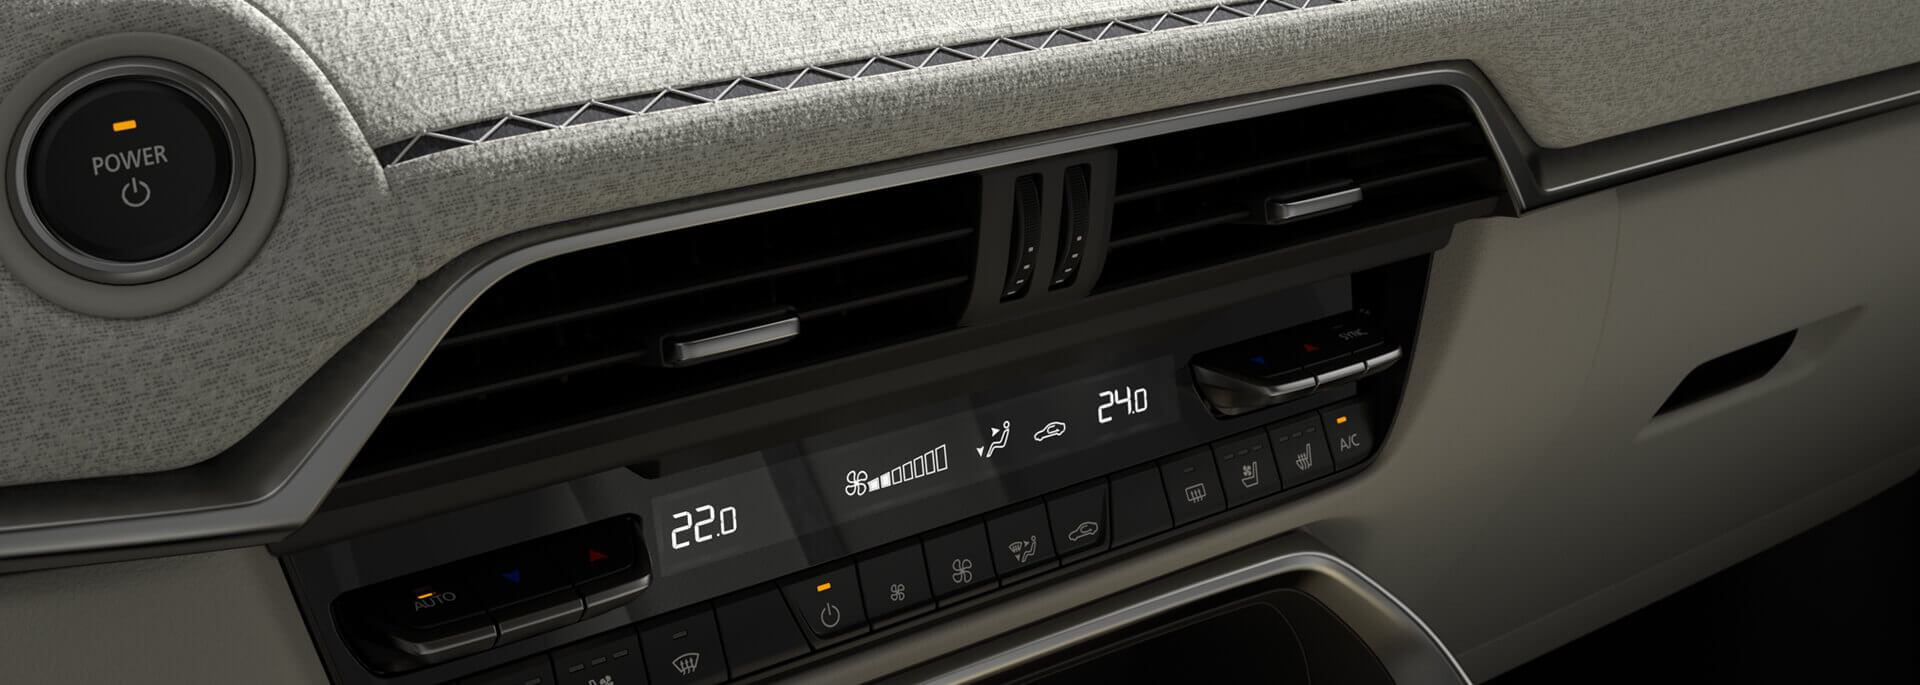 Η καμπίνα του ολοκαίνουργιου Mazda CX-60 με υλικά υψηλής ποιότητας και παραδοσιακά ιαπωνικά υφάσματα.